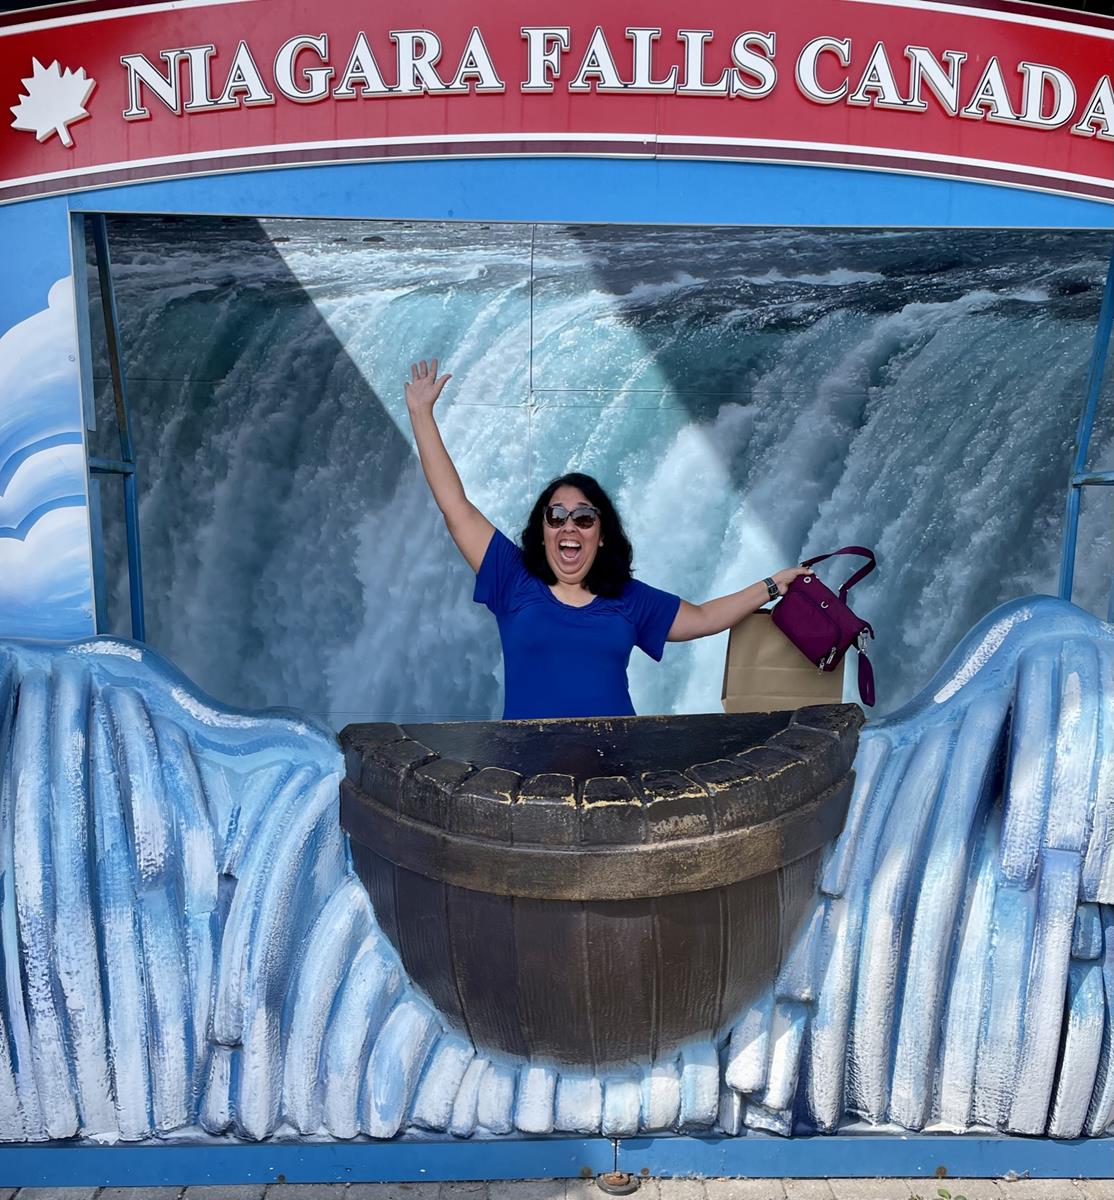 Here I am falling for Niagara Falls!